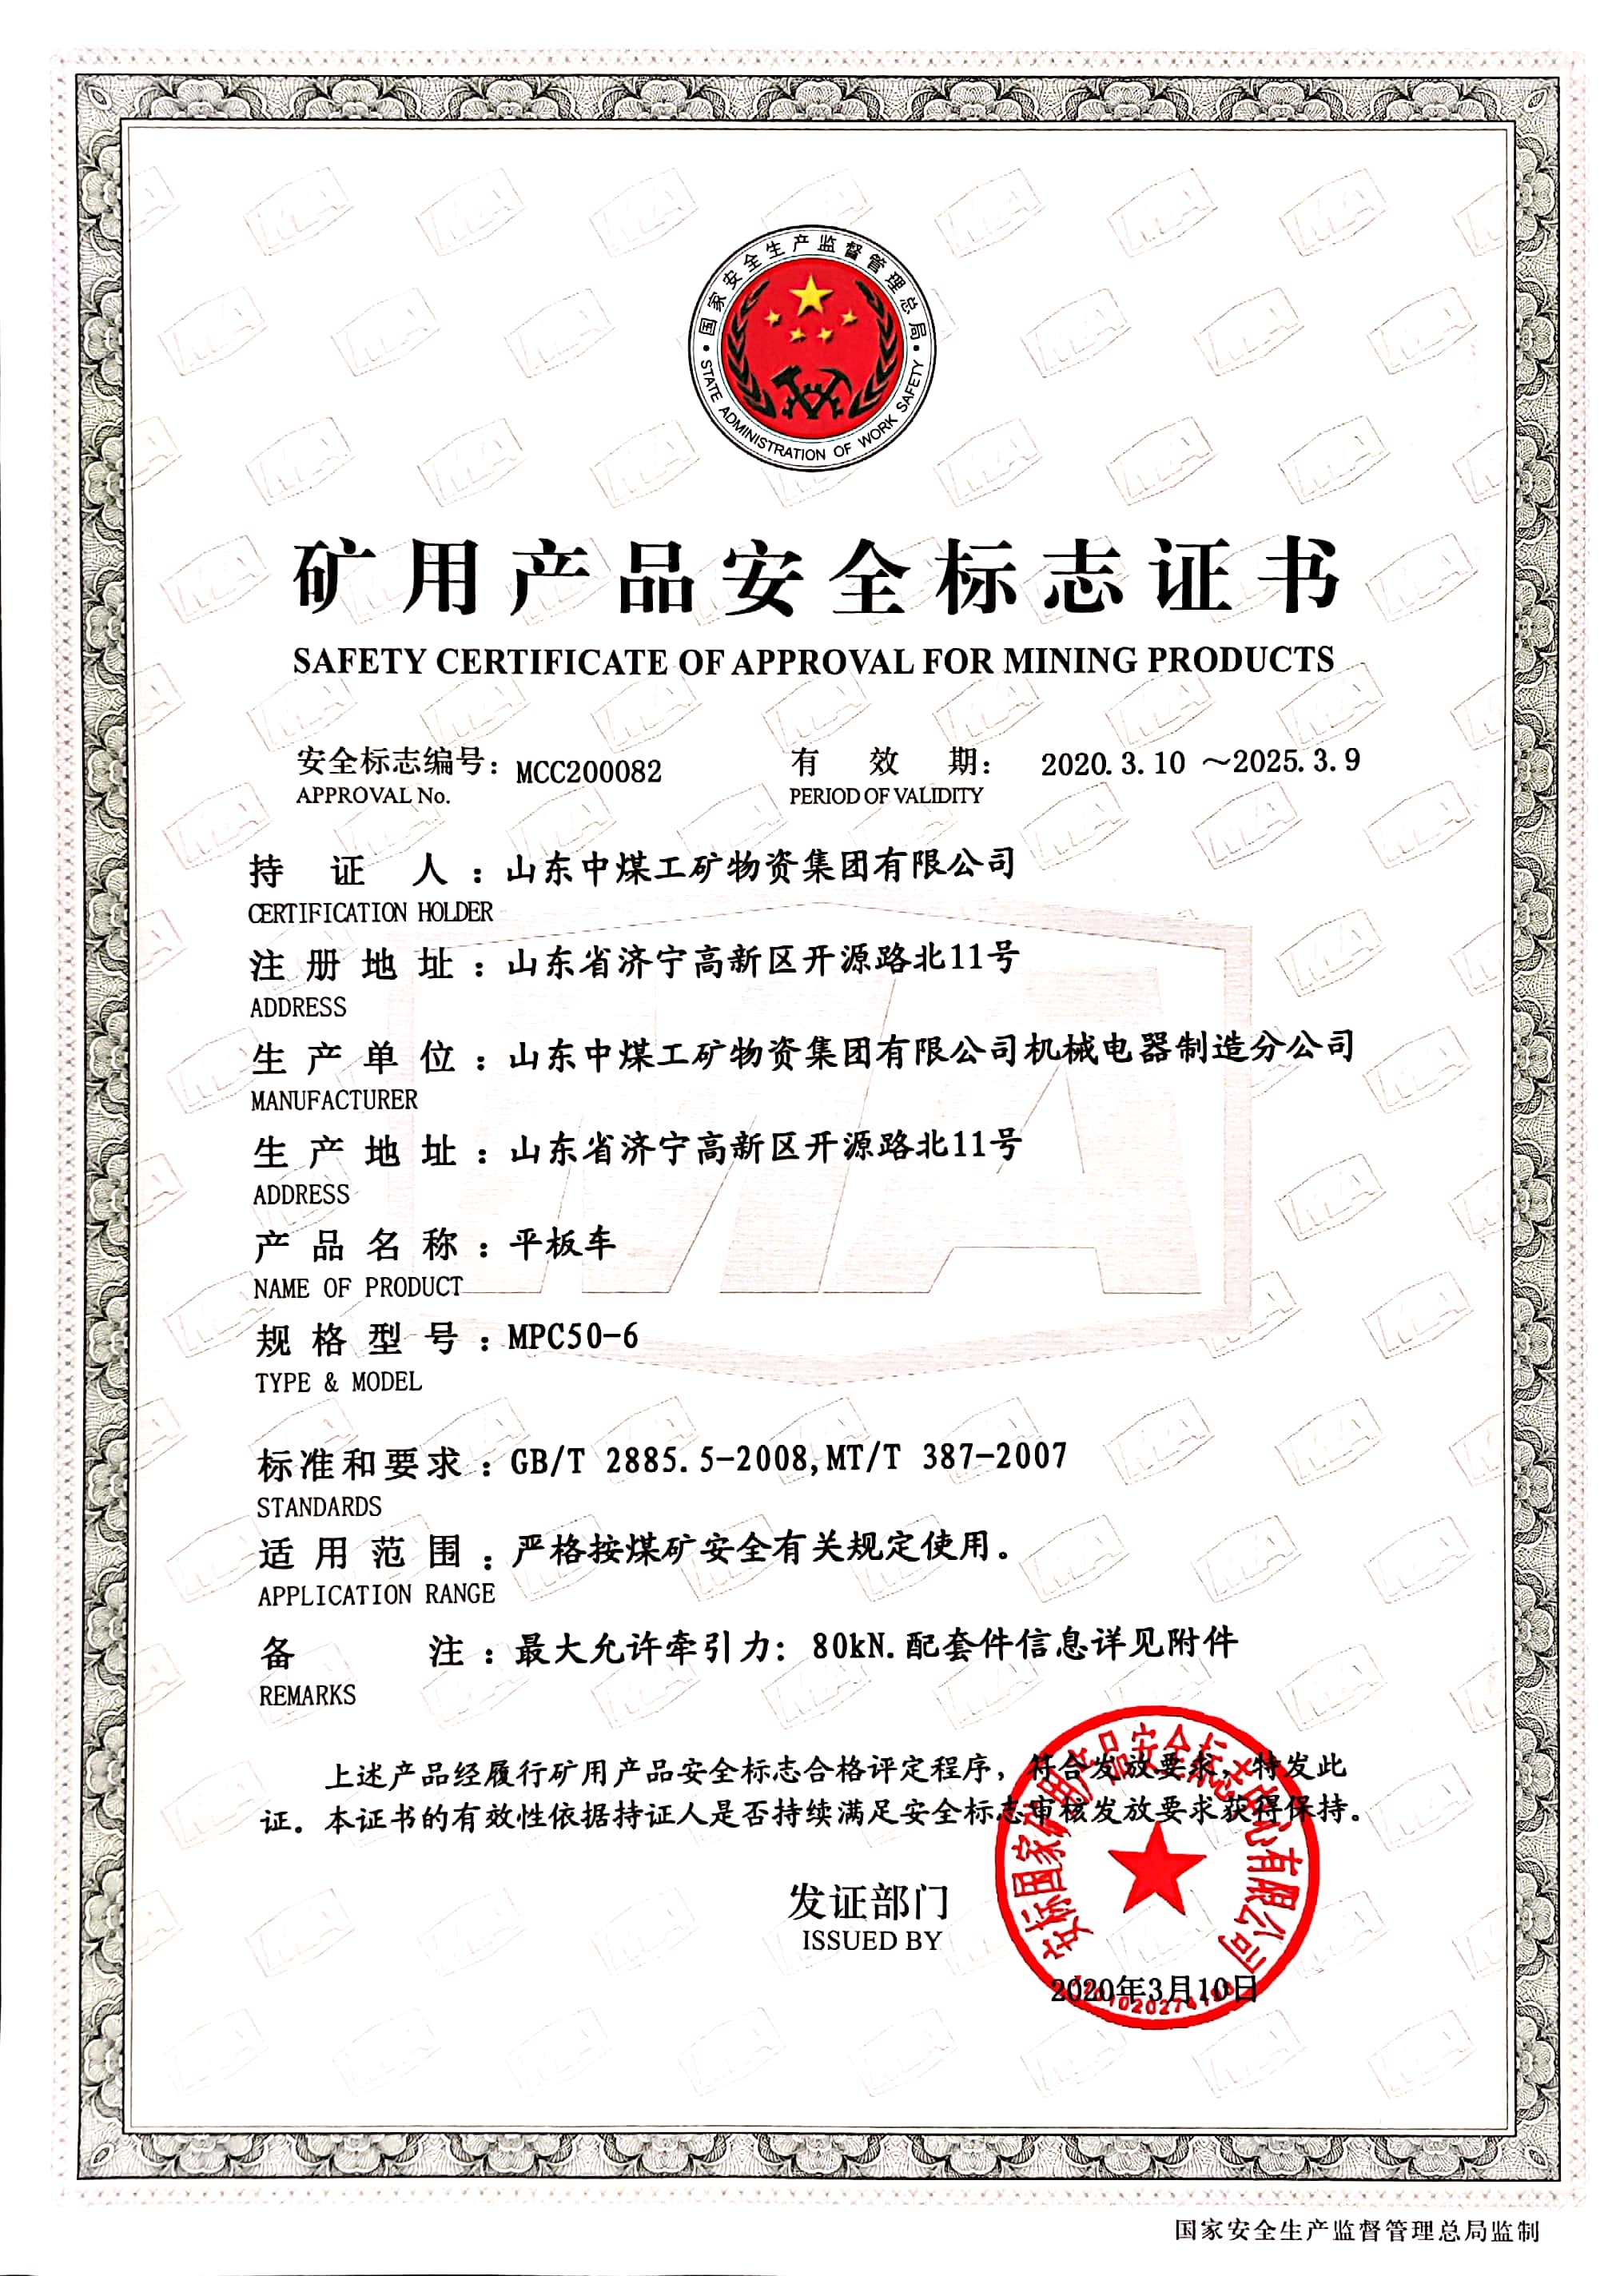 Сердечные поздравления China Coal Group: еще 3 сертификата безопасности знака национального горнодобывающего предприятия